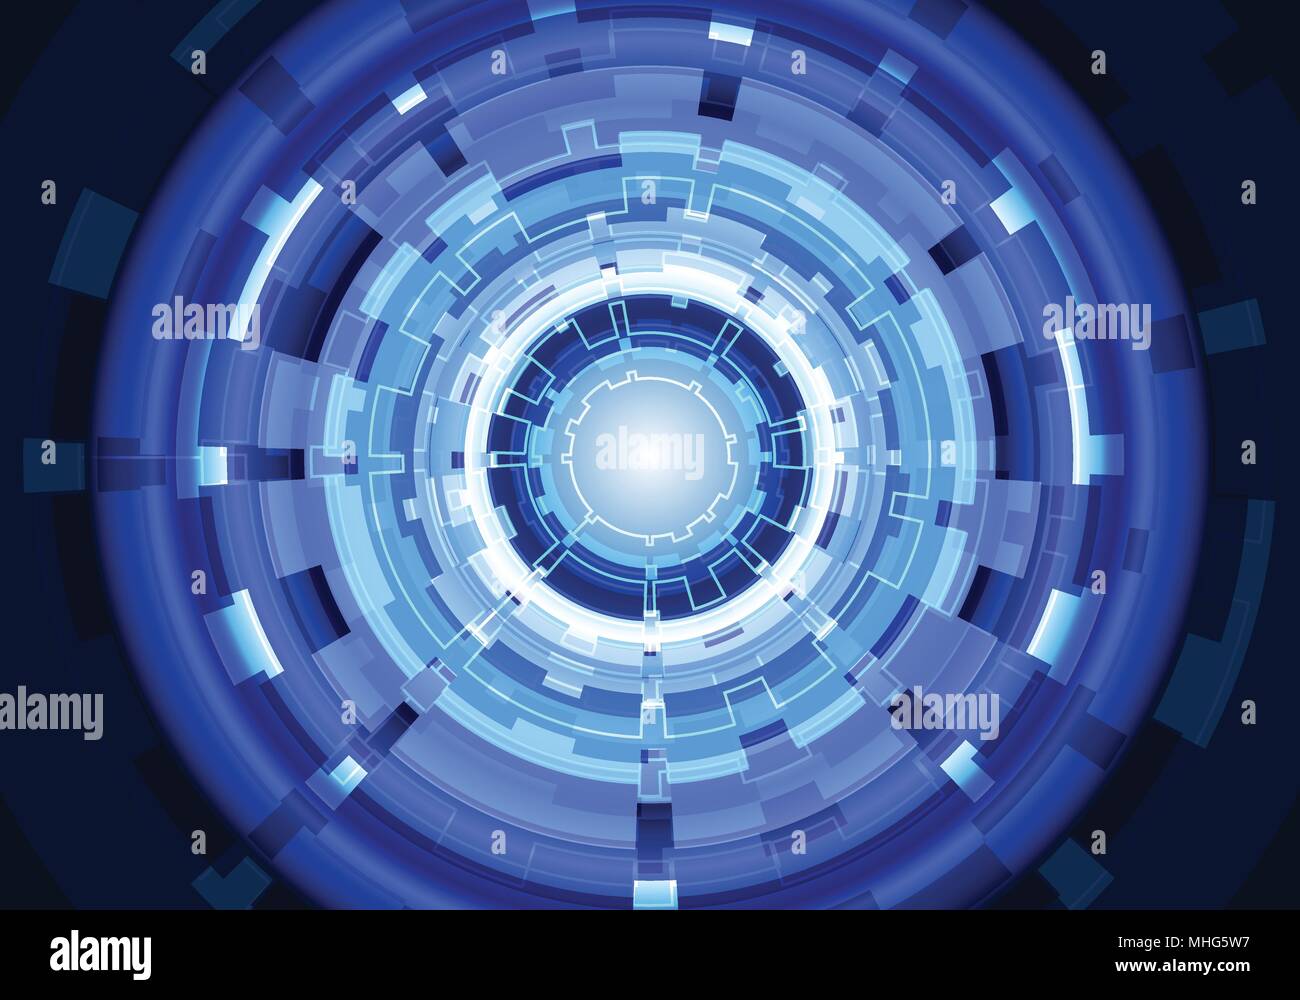 Résumé de la technologie de Blue Circle power energy light design modern futuristic background vector illustration. Illustration de Vecteur